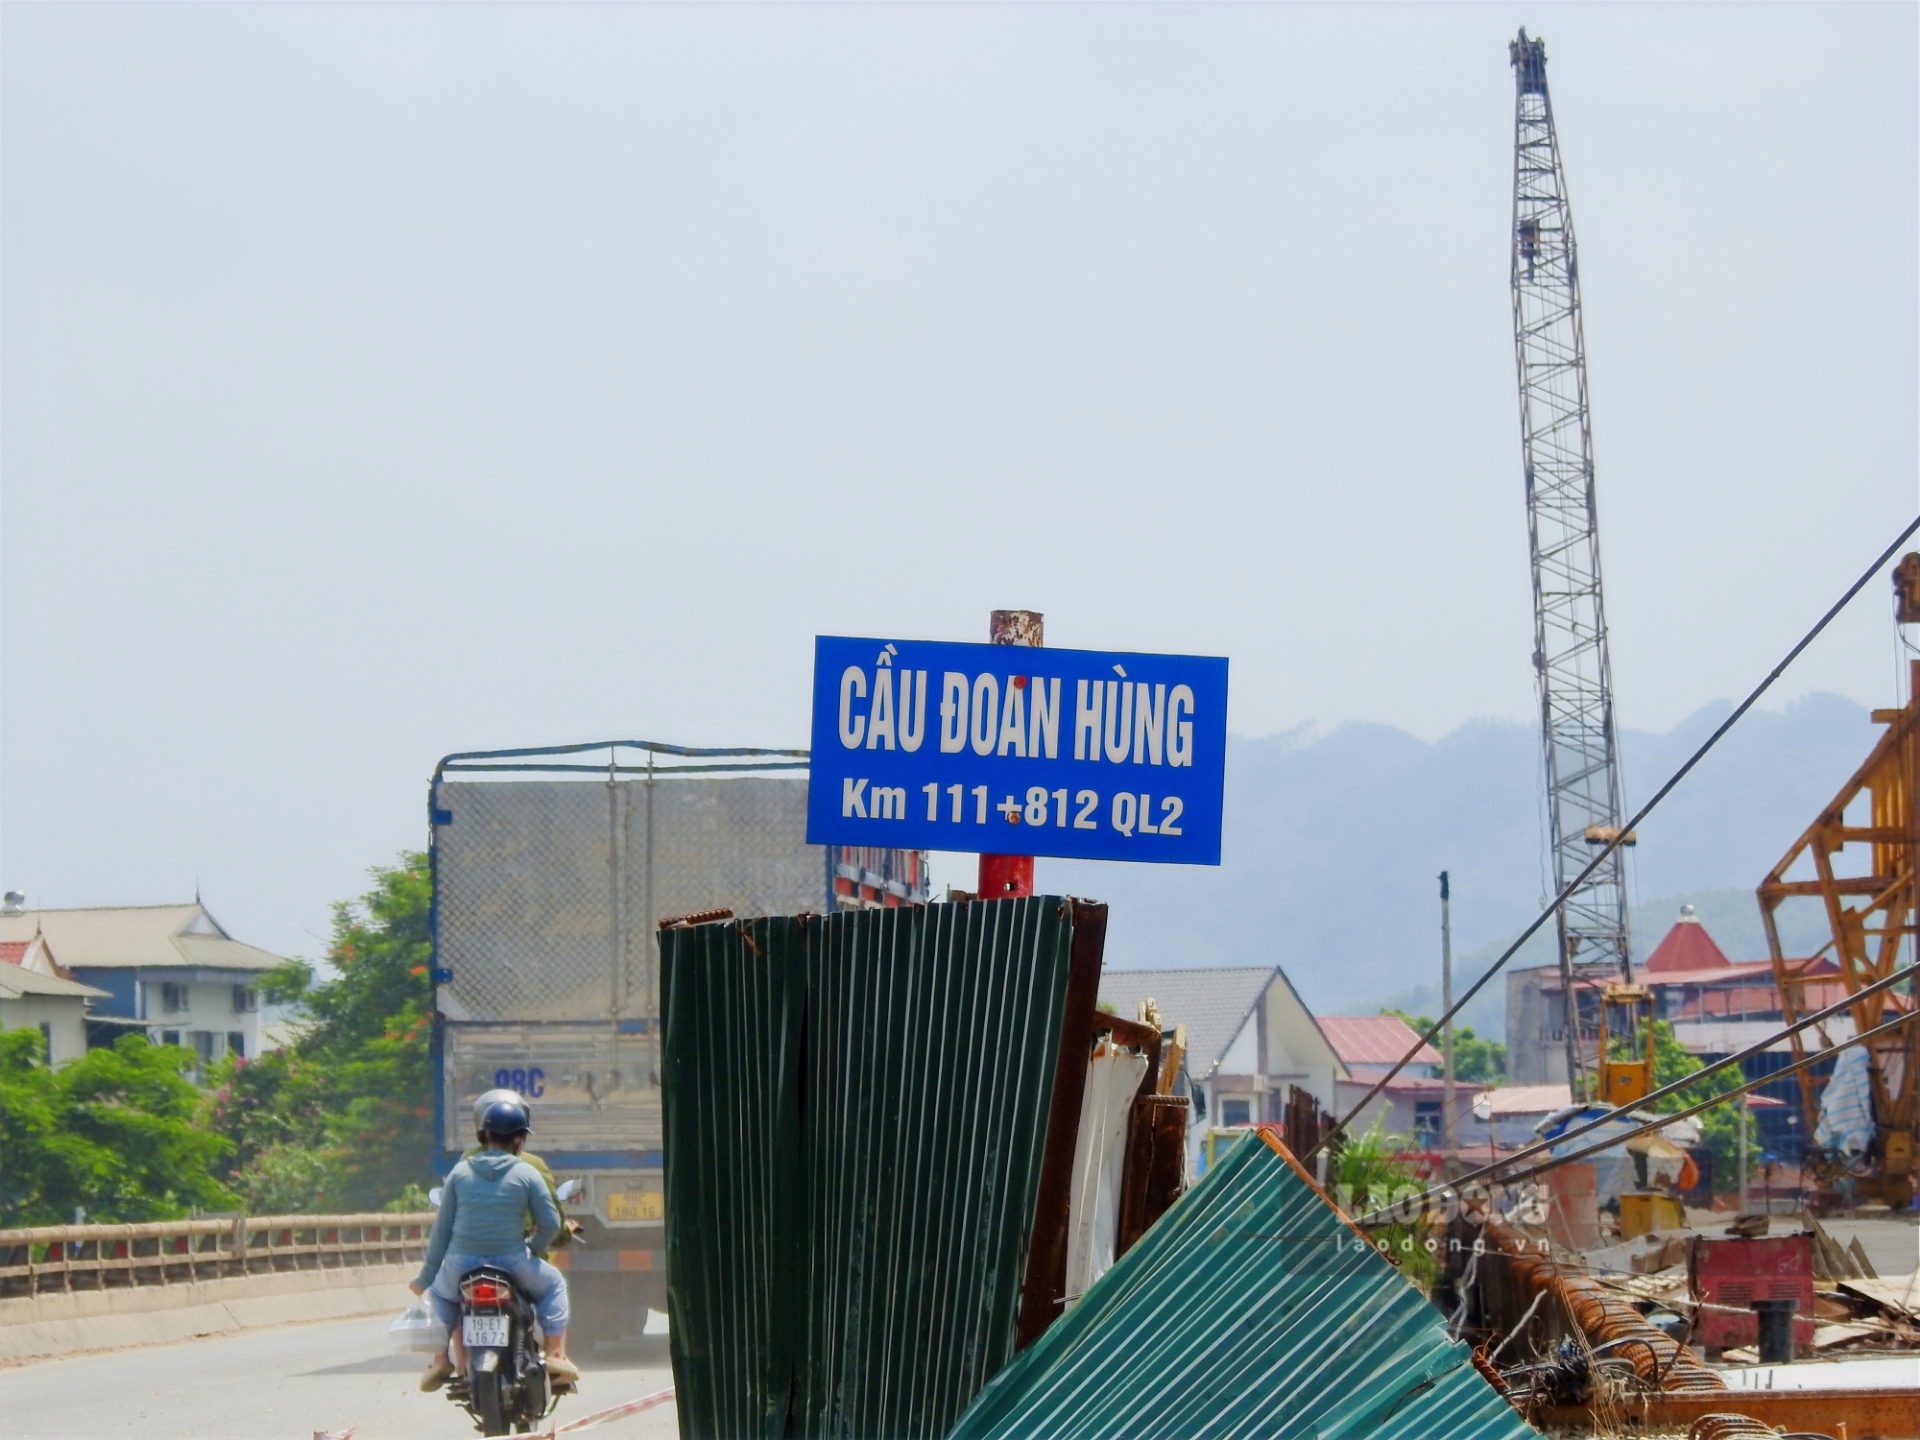 Dự án đầu tư xây mới cầu Đoan Hùng (sát vị trí cầu cũ) trên Quốc lộ 2, bắc qua sông Chảy nối thị trấn Đoan Hùng và xã Chí Đám (huyện Đoan Hùng) thuộc Dự án cải tạo cầu yếu và cầu kết nối trên các quốc lộ (giai đoạn I), sử dụng vốn vay EDCF giữa Chính phủ Việt Nam và Ngân hàng Xuất nhập khẩu Hàn Quốc.